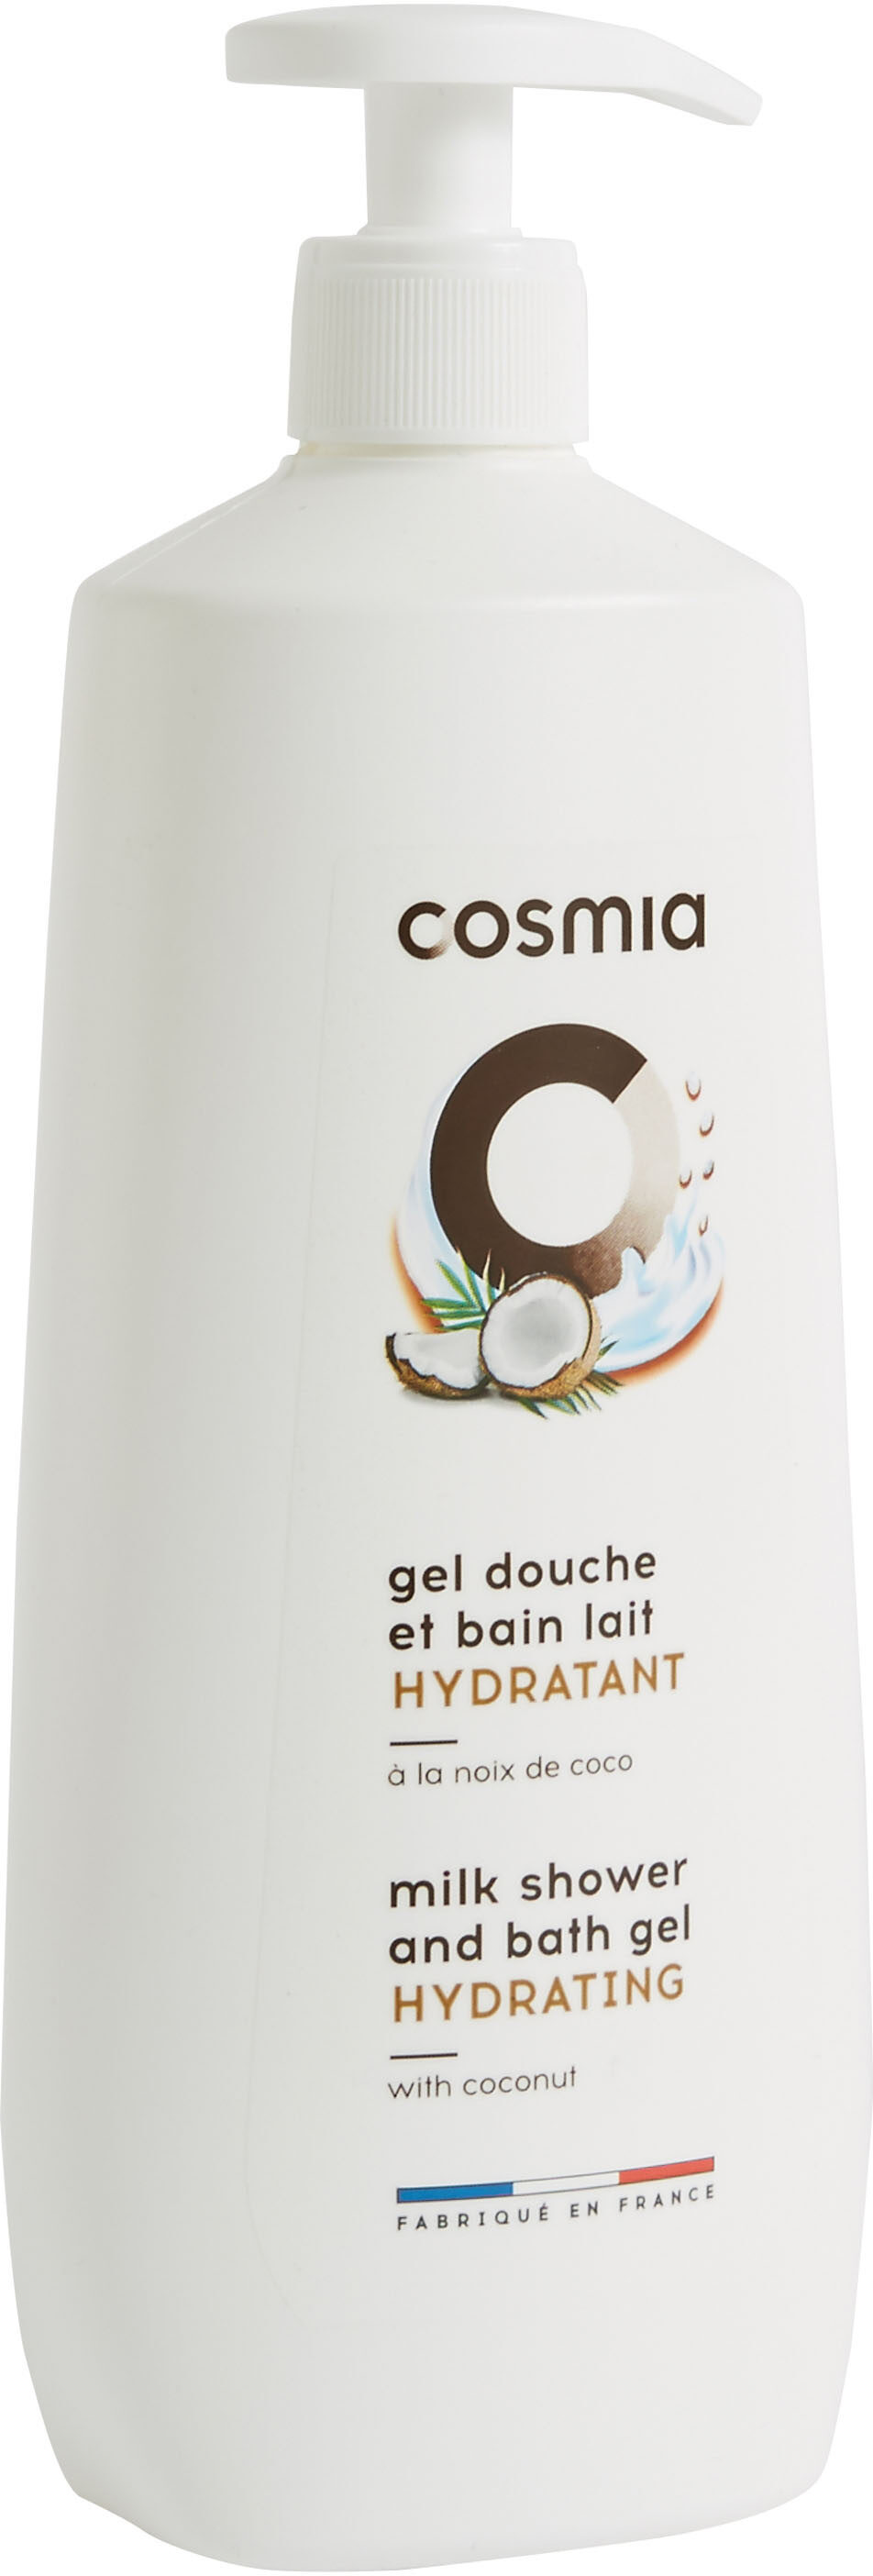 Cosmia gel douche et bain lait hydratant a la noix de coco - Produit - fr